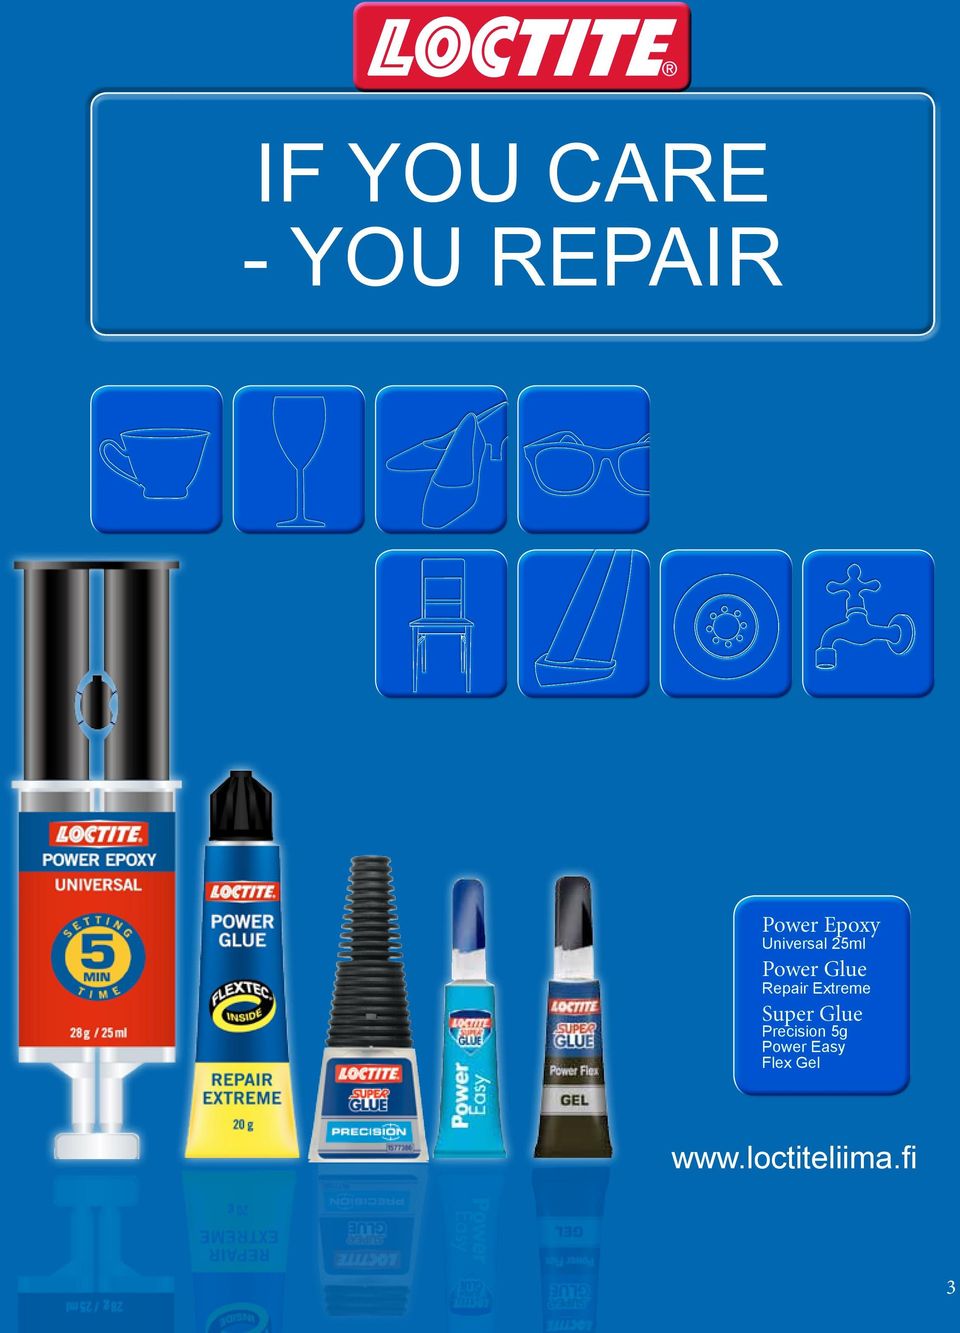 Repair Extreme Super Glue Precision